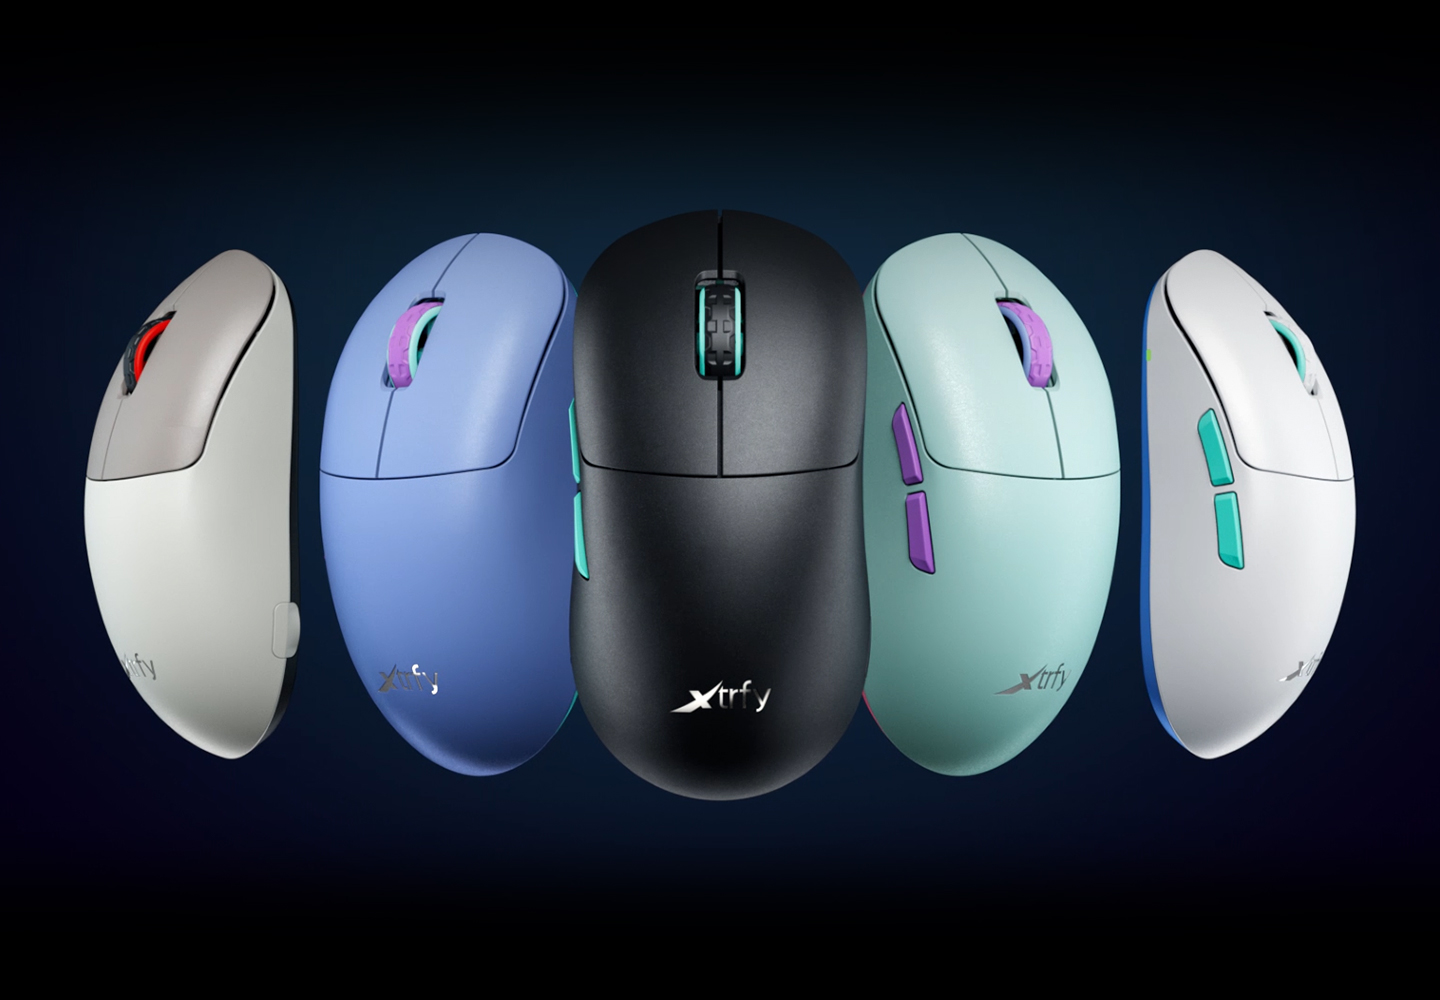 Xtrfyが革新的なマウス形状の「M8 ワイヤレス ゲーミングマウス」を発売